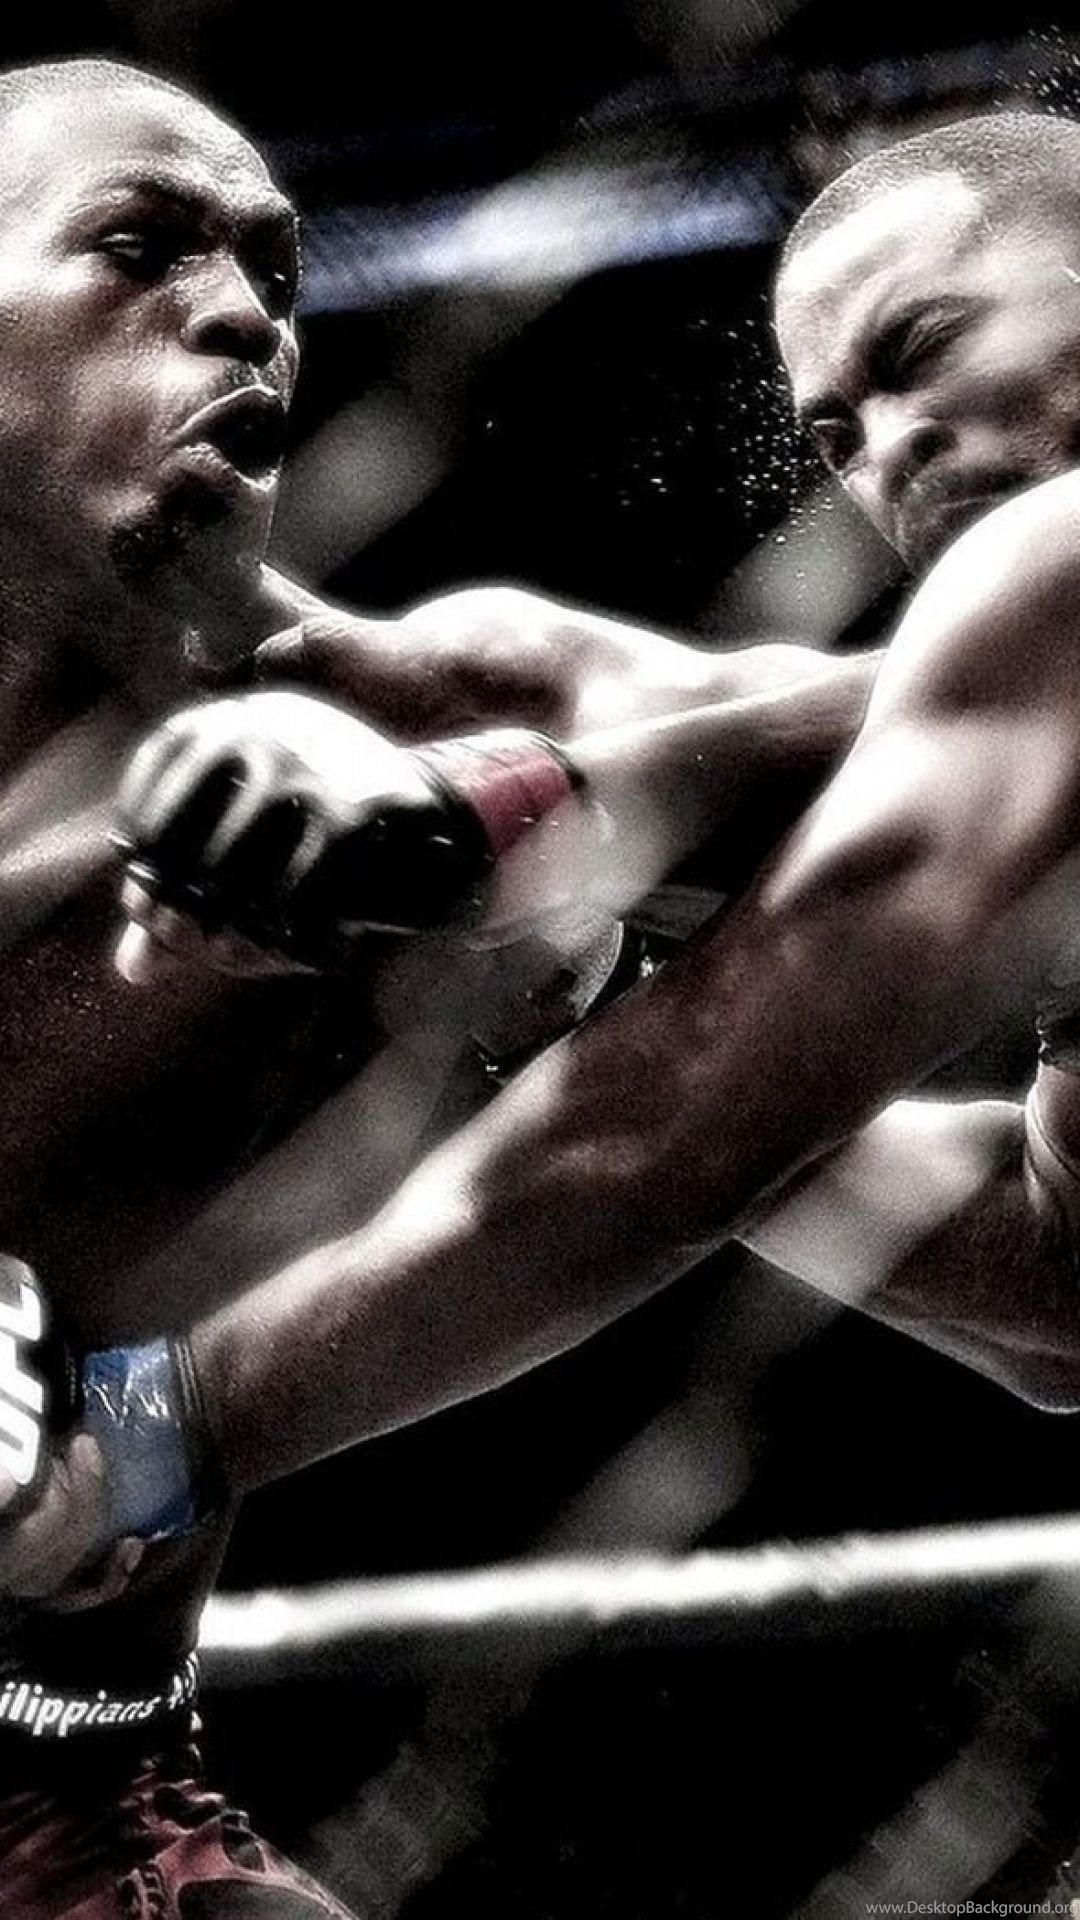 UFC S4 Wallpapers Desktop Background